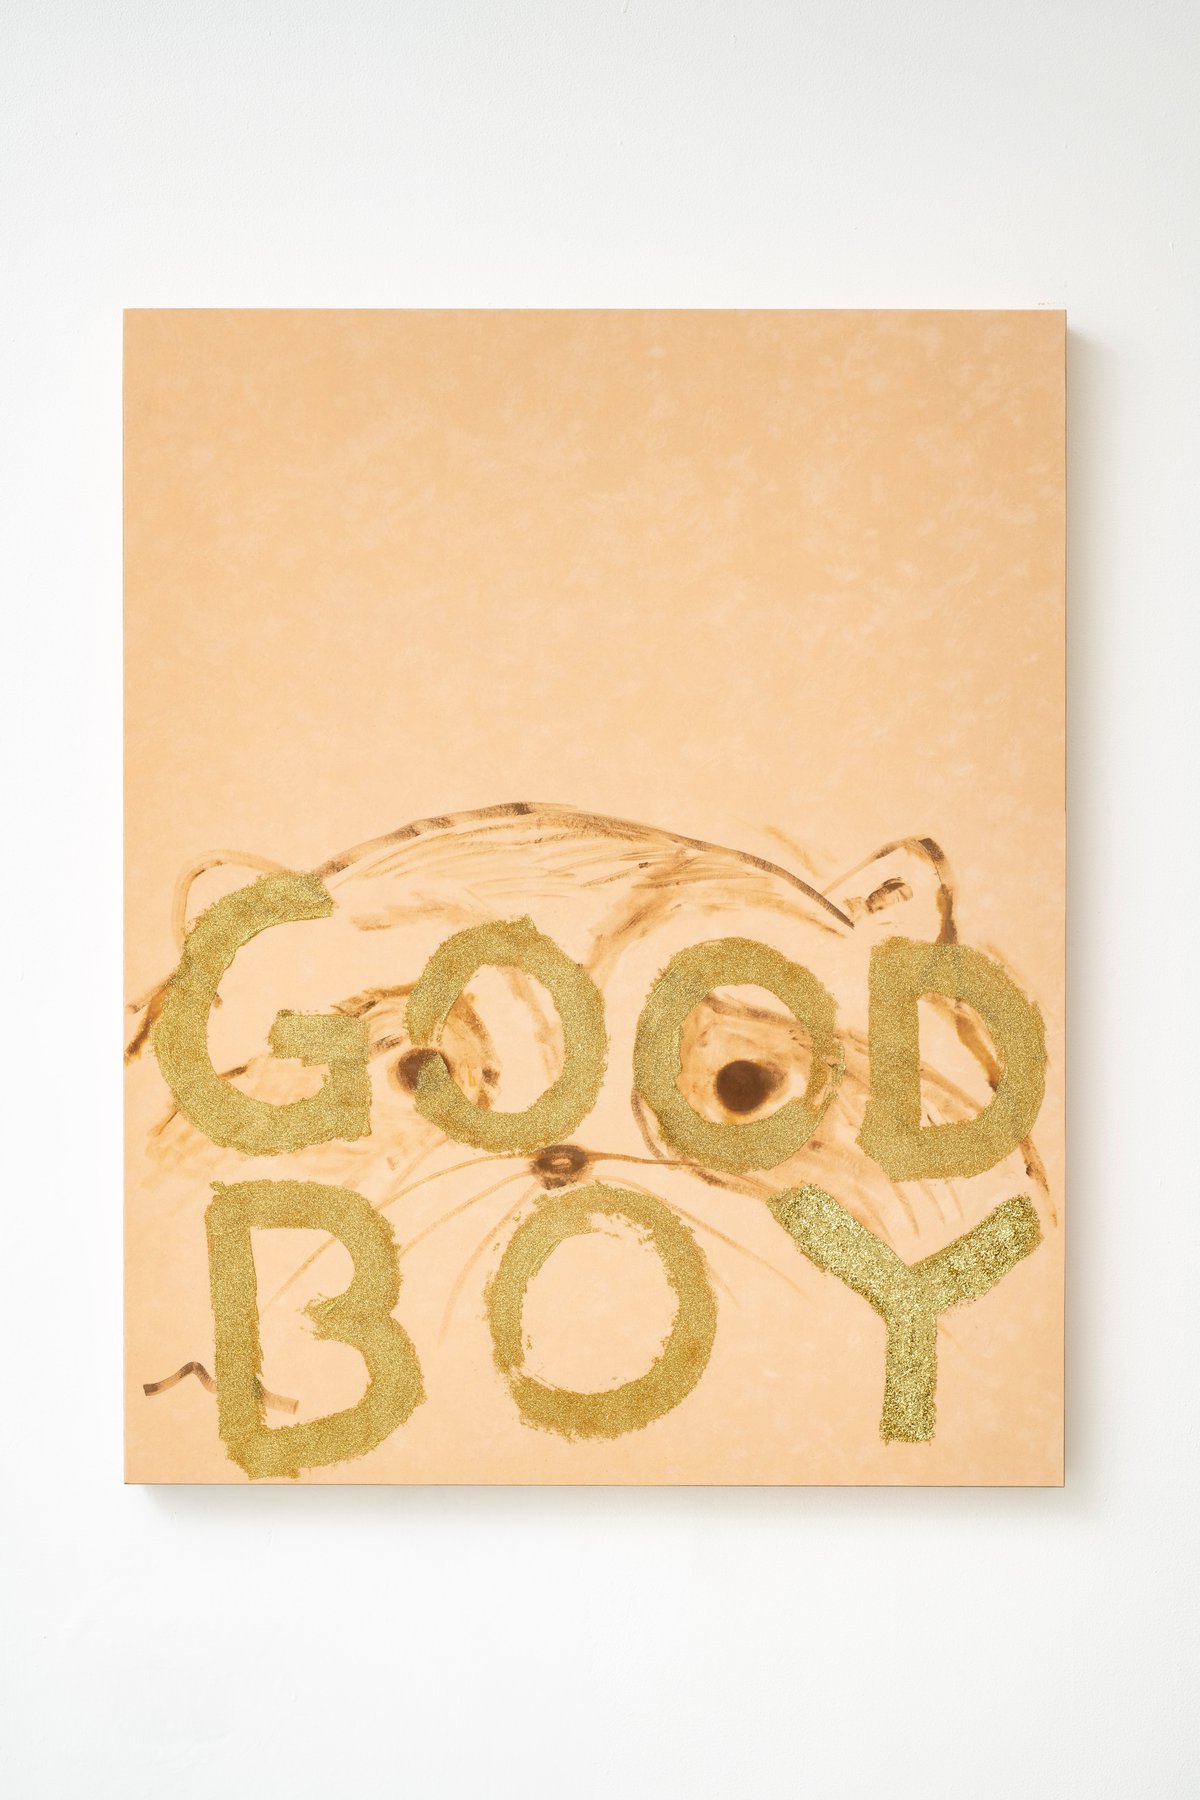 Philipp TimischlGOOD BOY (Mango, Sienna, Gold), 2019Velvet on wooden board, oil, glitter100 x 80 x 5 cm